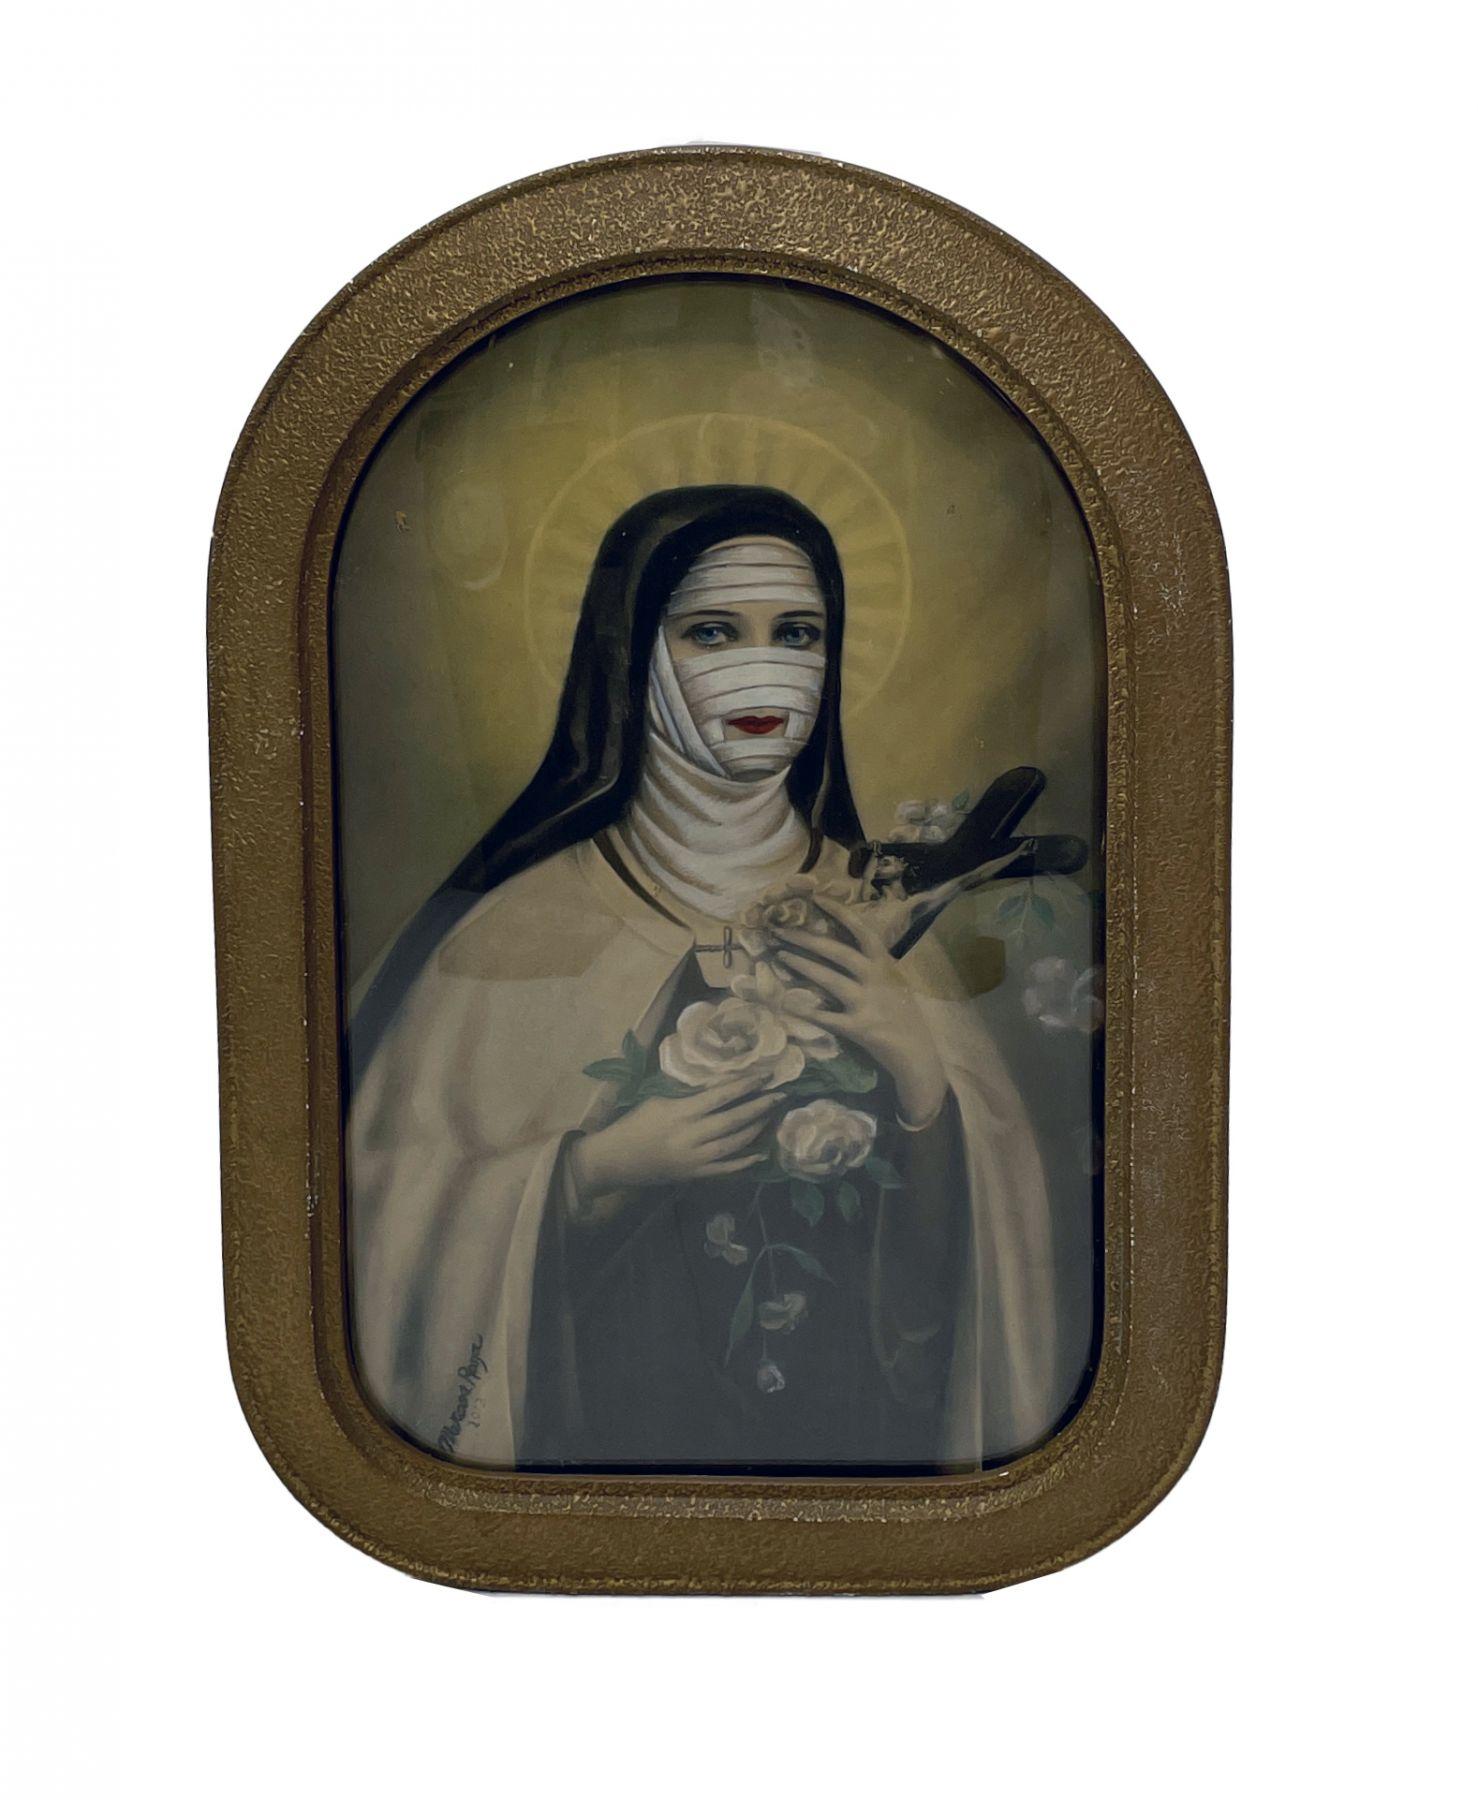 St. Theresa #1 – Antike bemalte Fotografie in Rahmen – Mixed Media Art von Marcos Raya